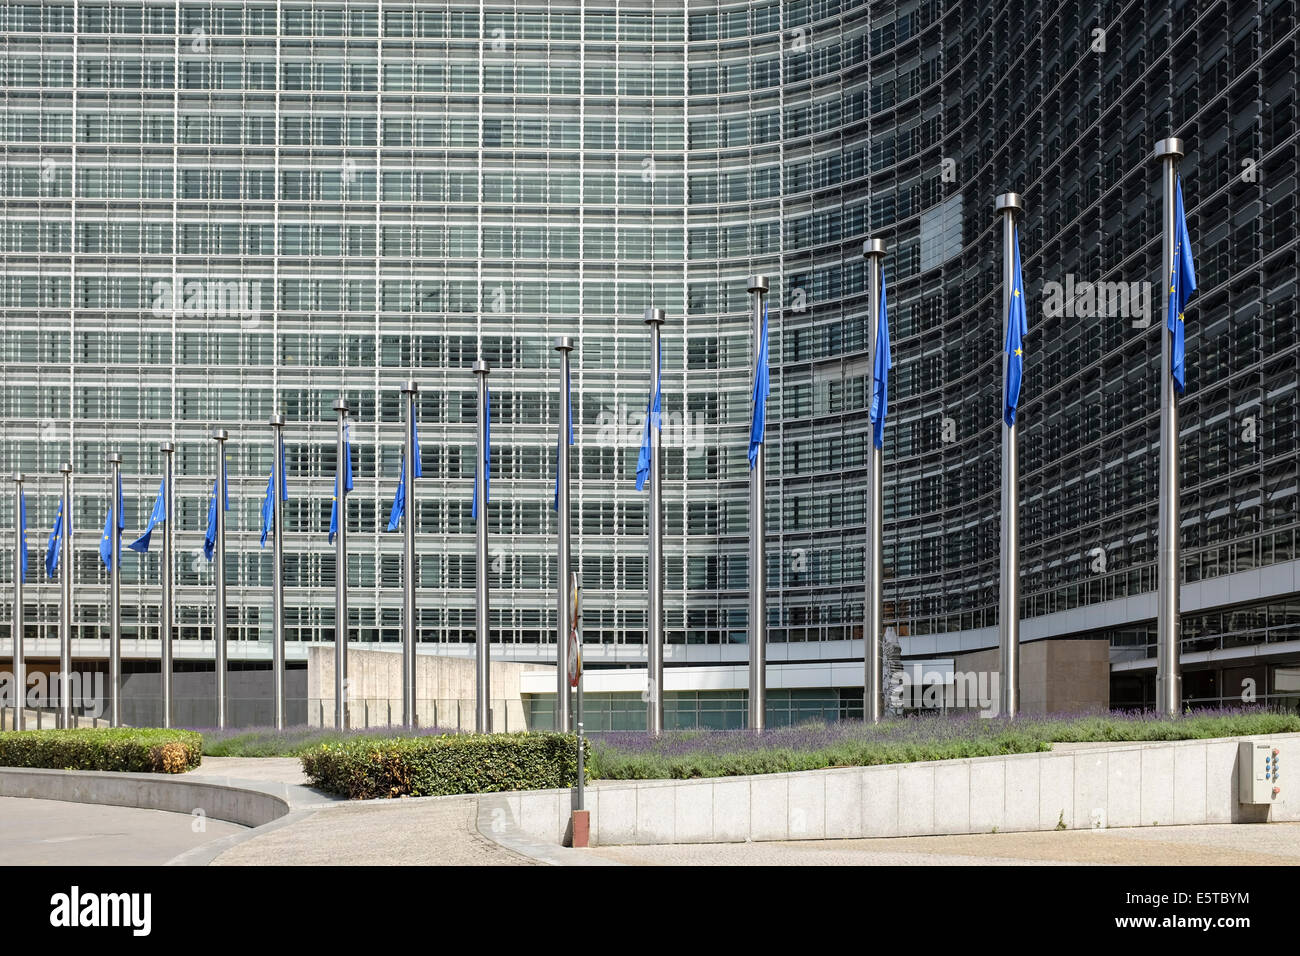 Europäische Union Flaggen vor dem Berlaymont-Gebäude (Europäische Kommission), Wetstraat 200, Brüssel, Belgien Stockfoto